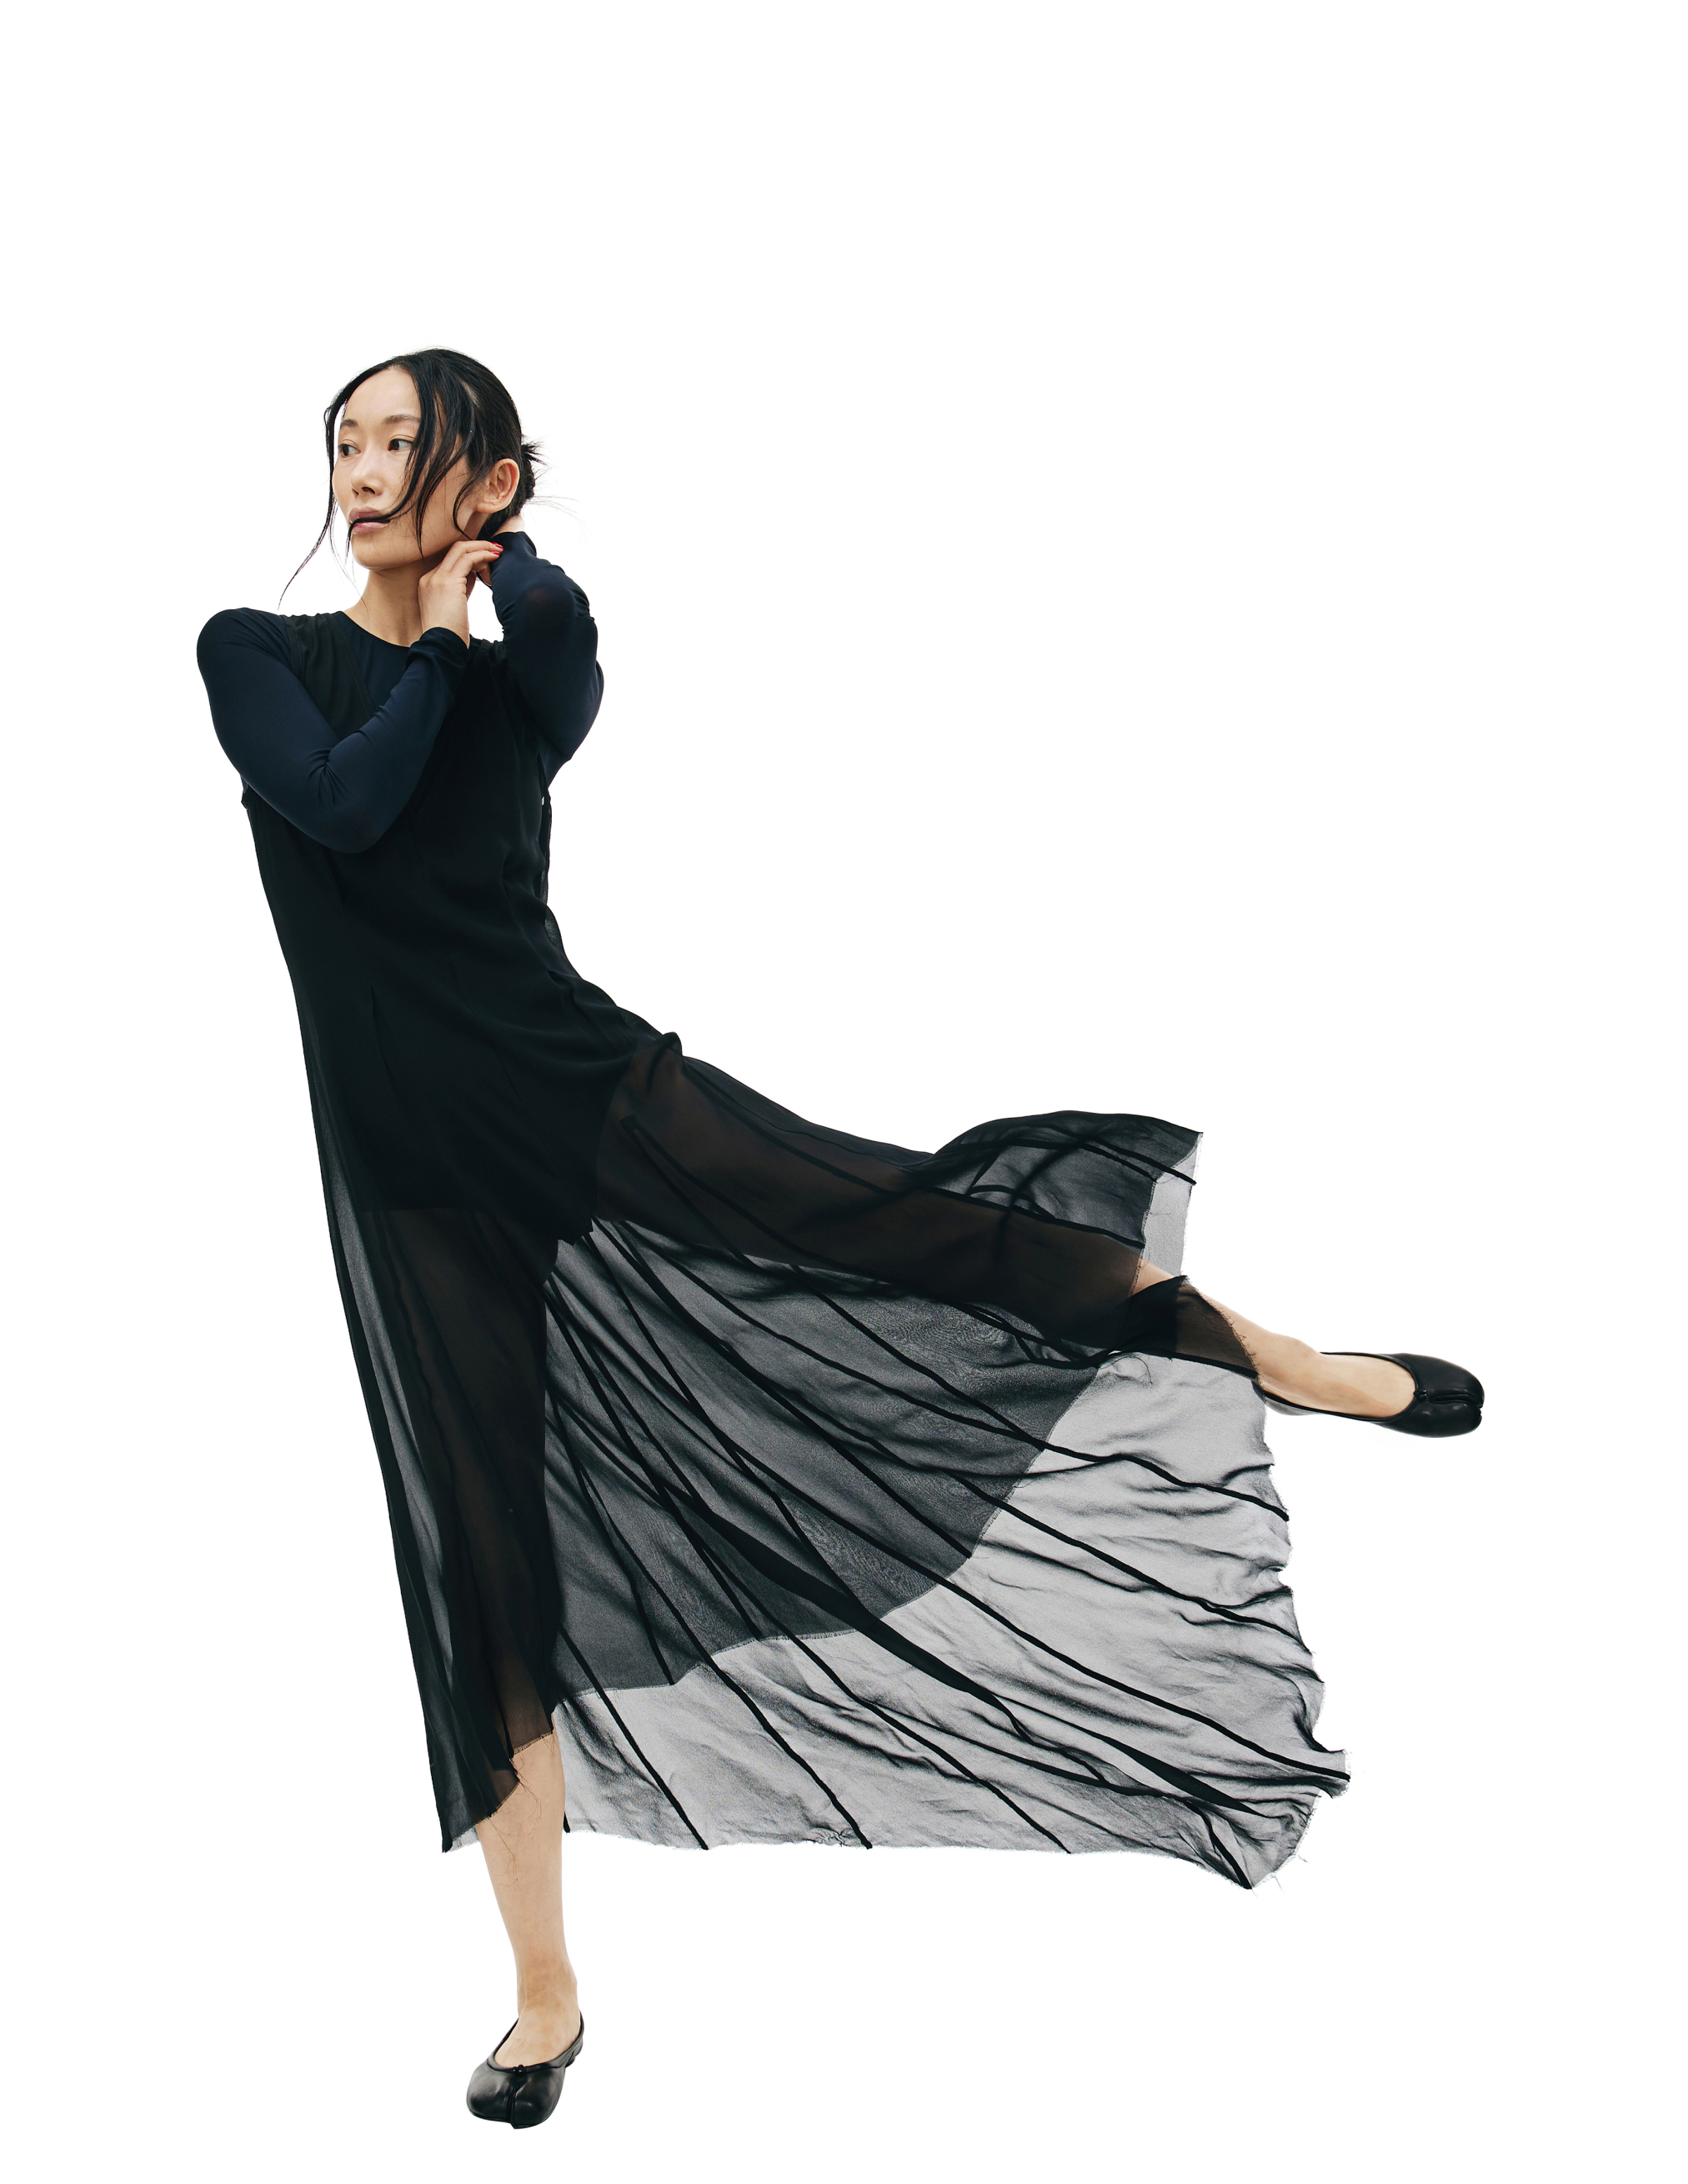 Черное полупрозрачное платье с удлиненной спинкой Ann Demeulemeester 2002-2260-140-099, размер 40;38 - фото 4